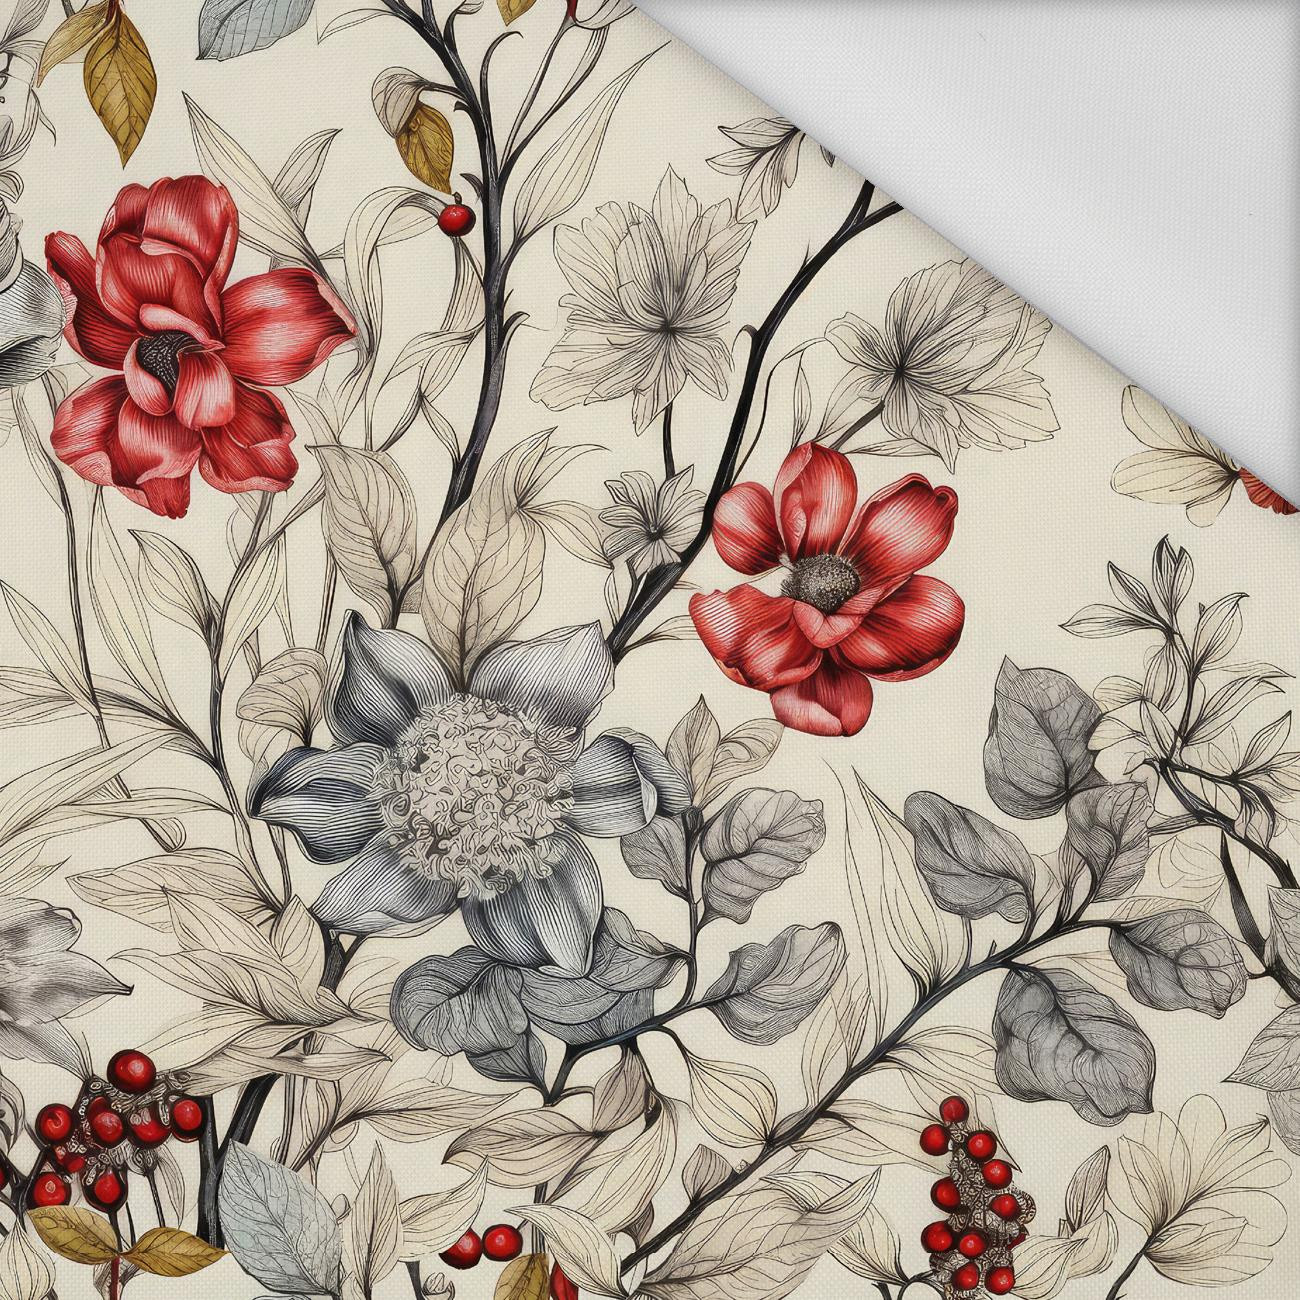 FLOWERS wz.16 - Waterproof woven fabric